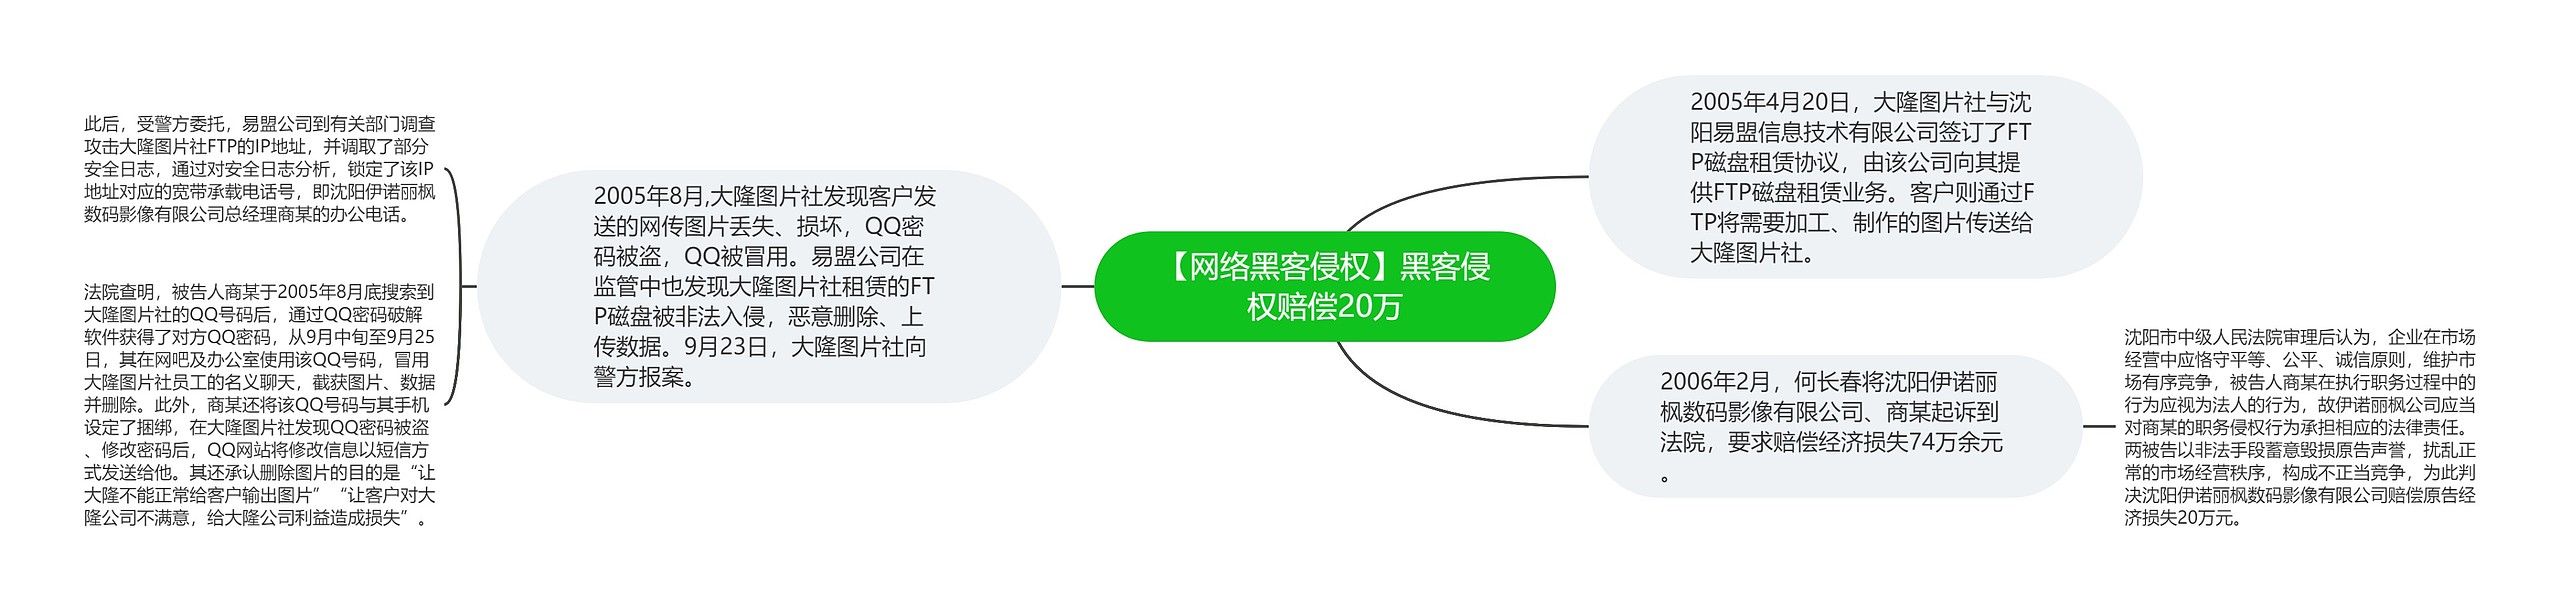 【网络黑客侵权】黑客侵权赔偿20万